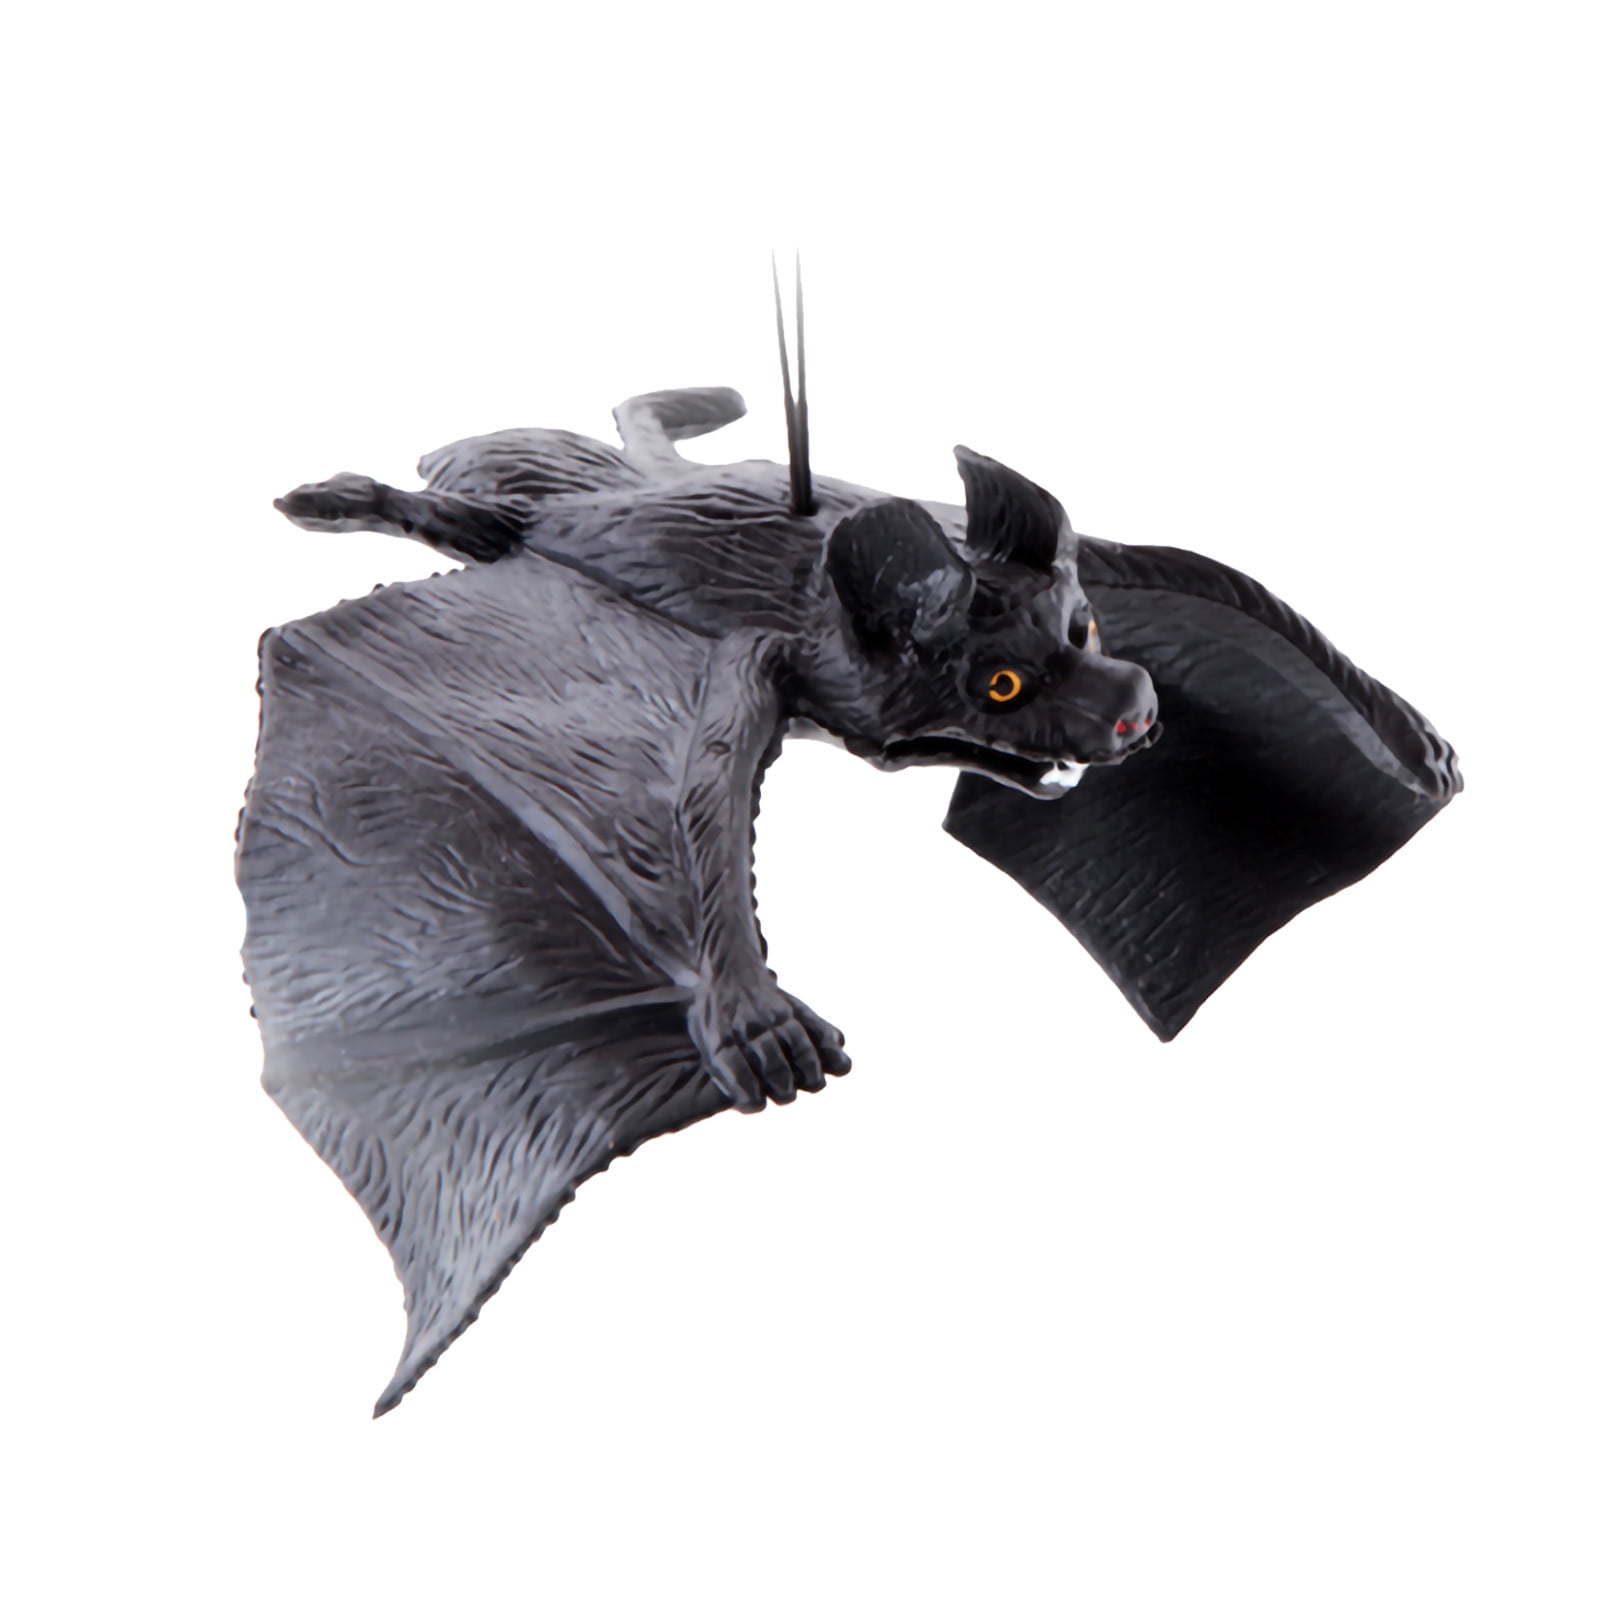 Oavqhlg3b Hanging Bats